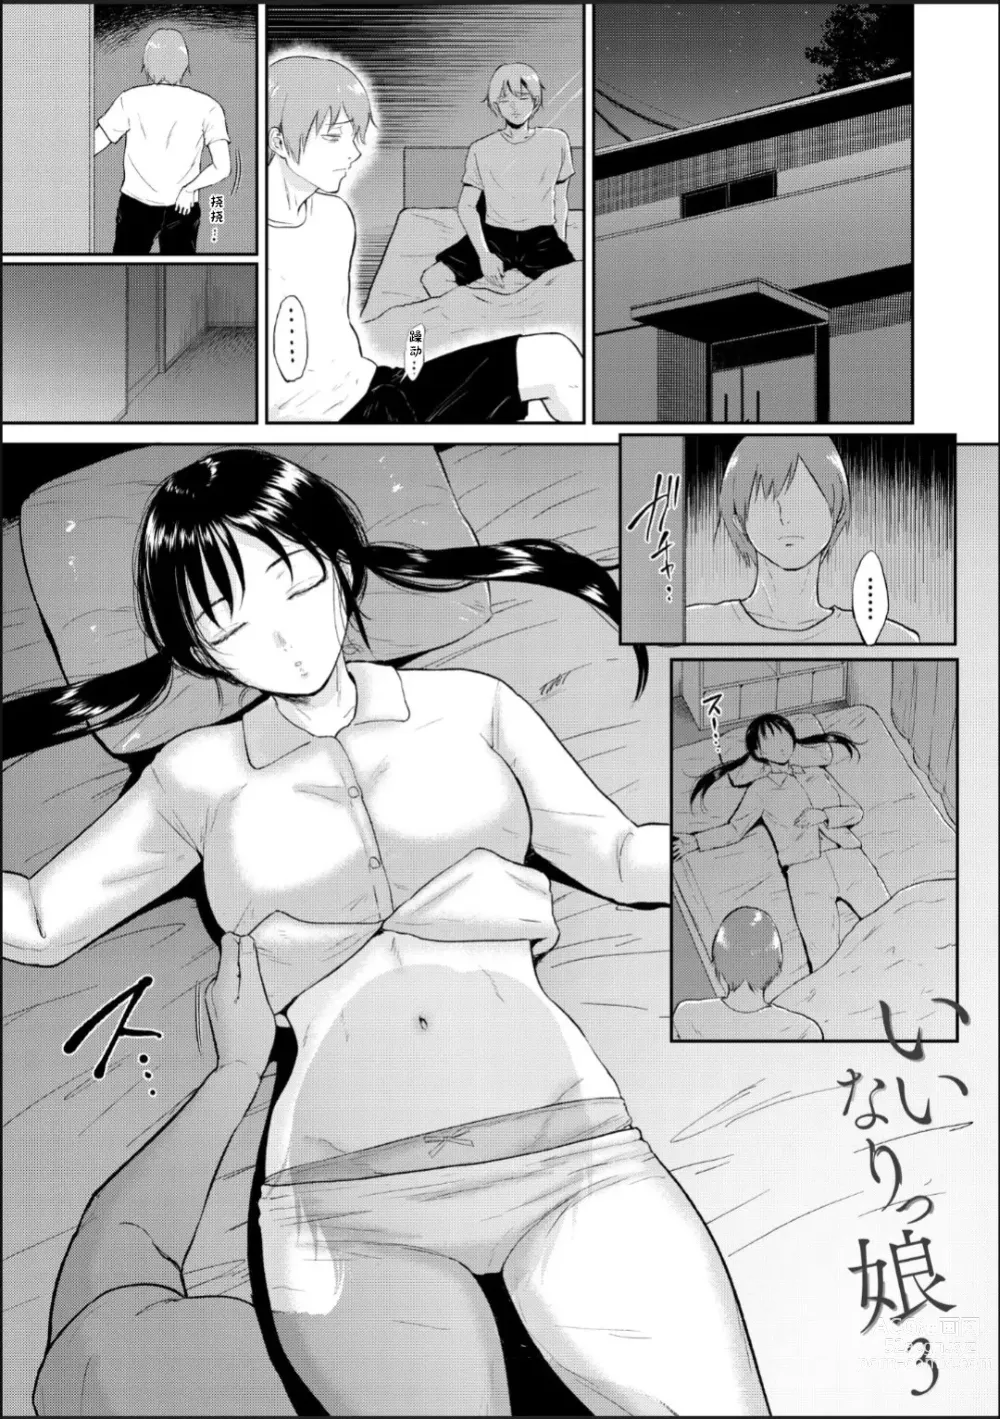 Page 3 of manga Iinarikko 3